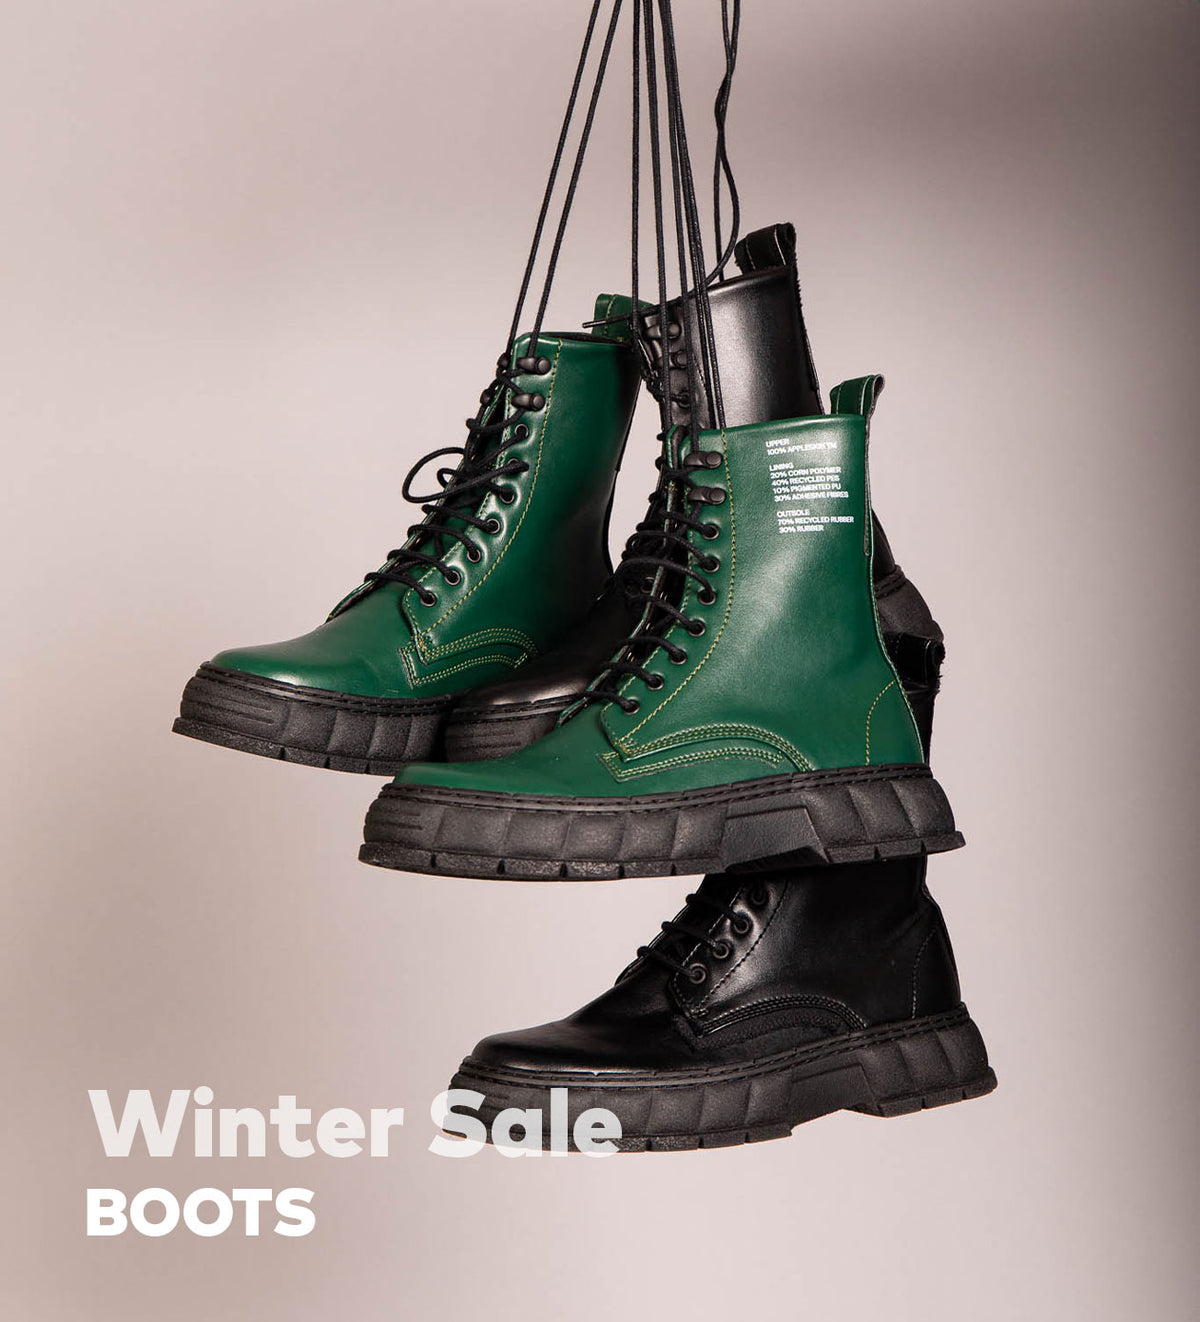 Winter Sale Footwear Boots — ZIGZAG